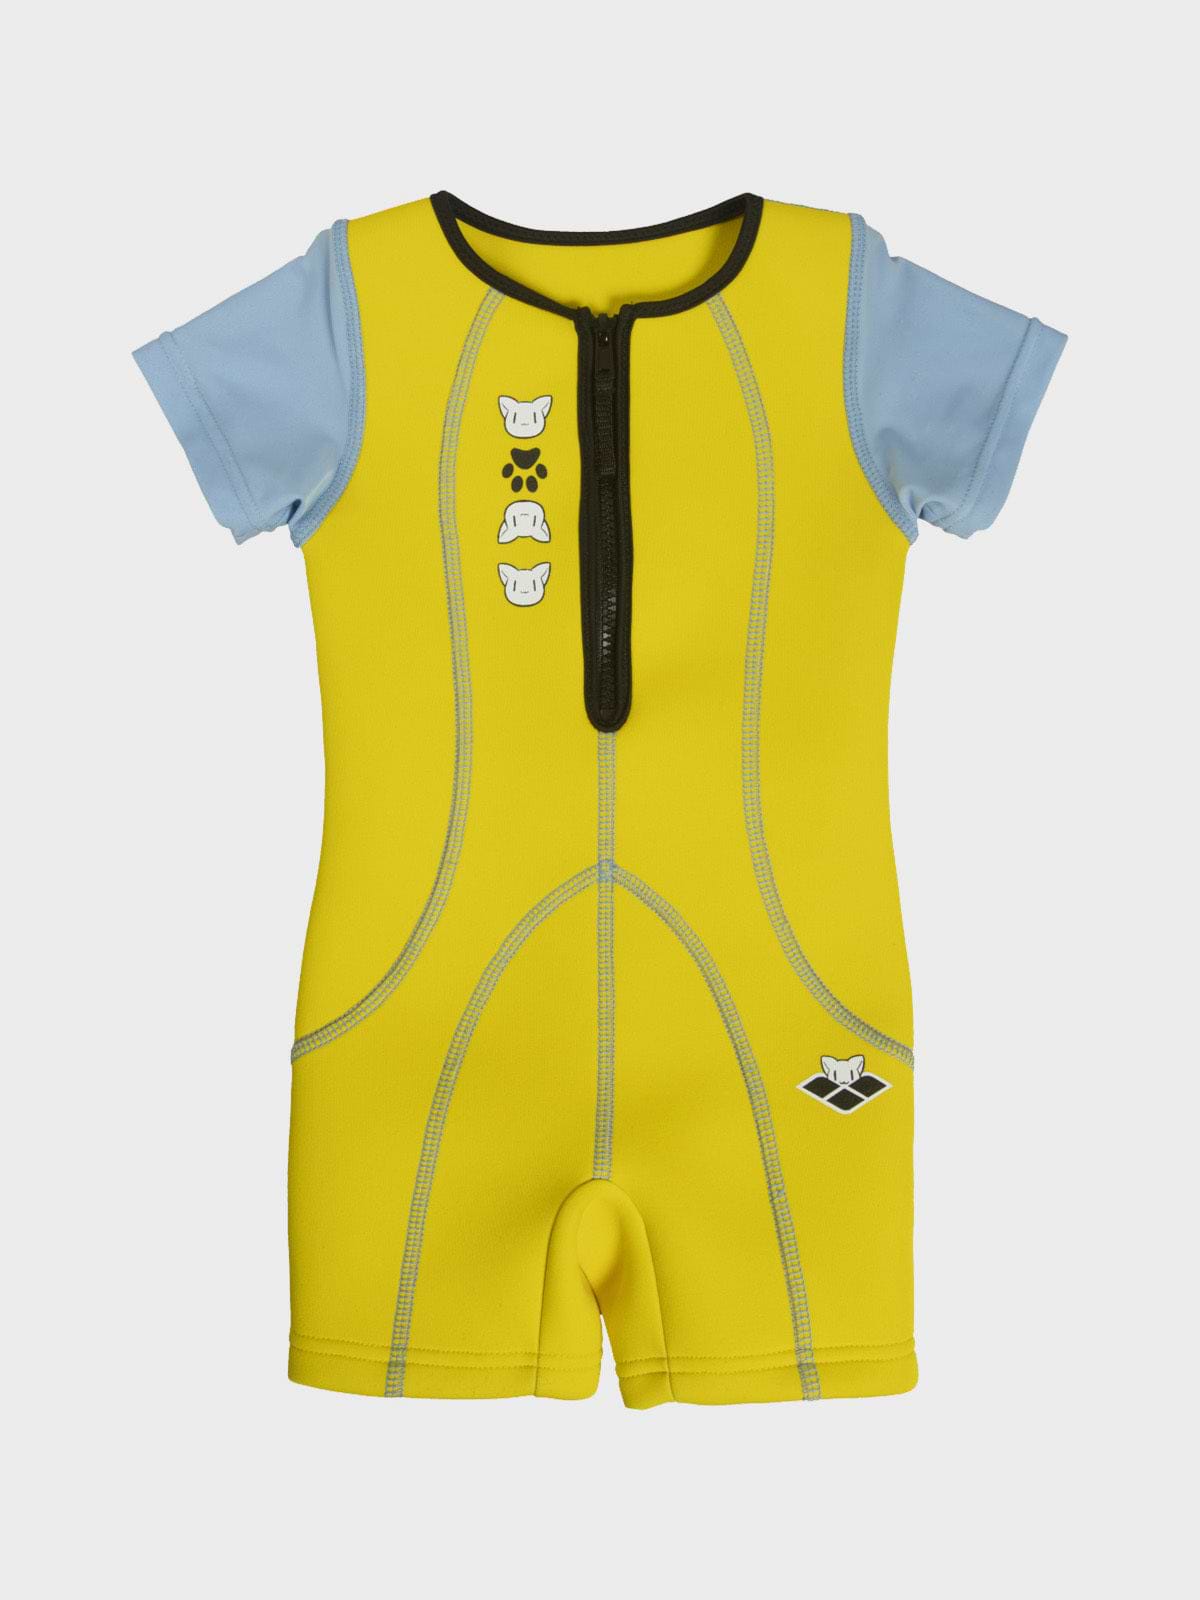 בגד ים אוברול בהדפס צבעוני / תינוקות וילדים